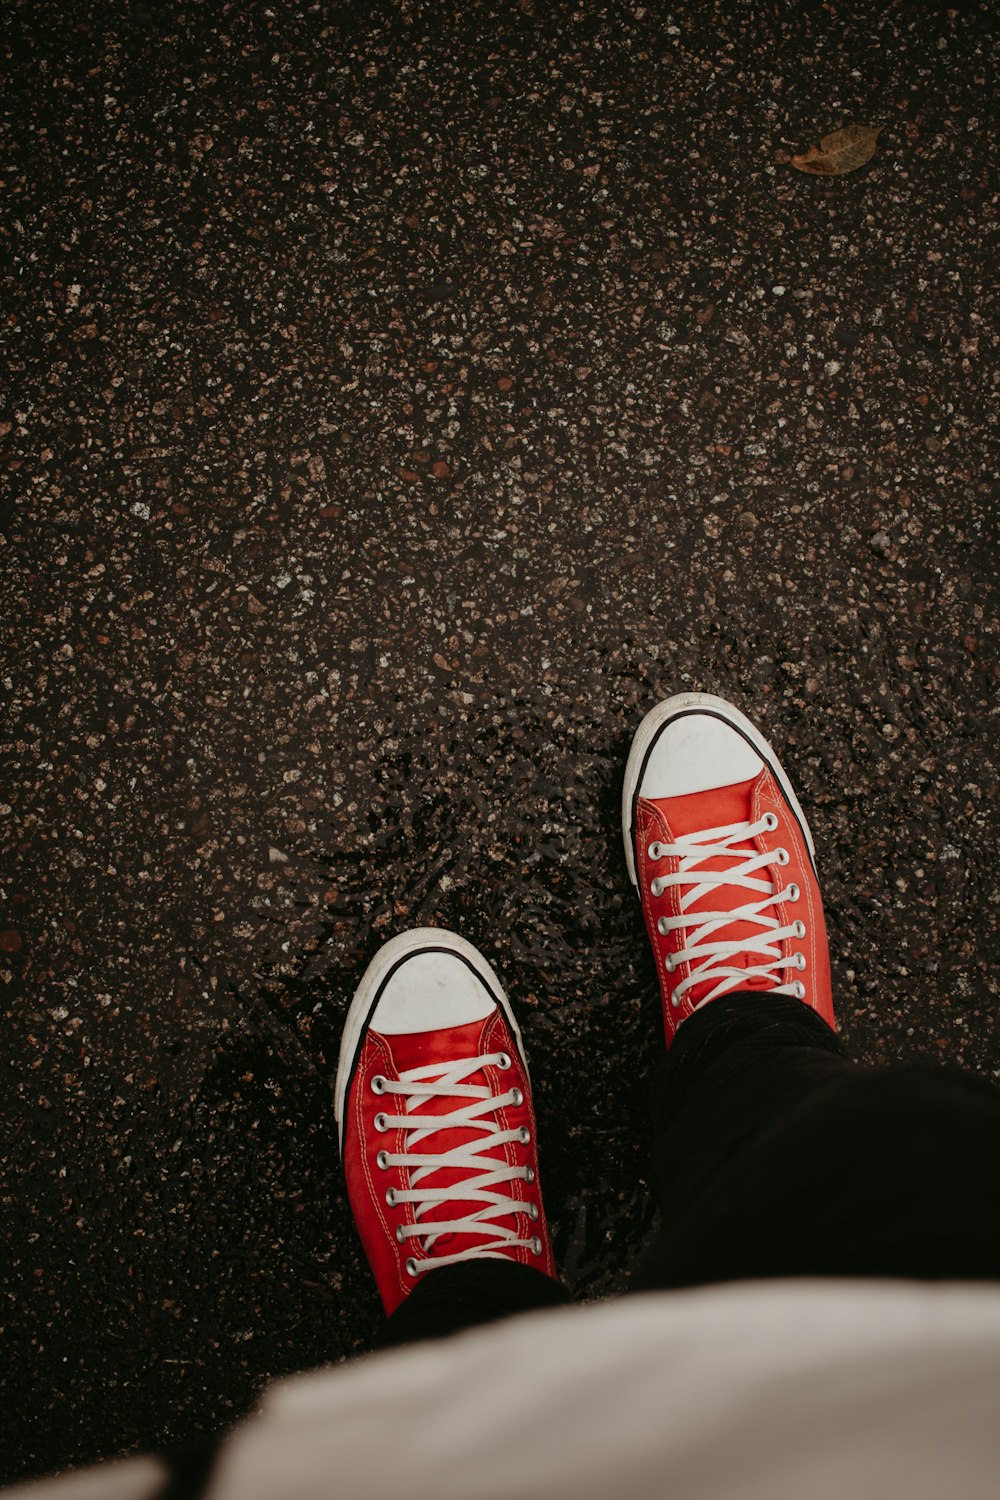 Una persona con zapatillas rojas parada en una acera